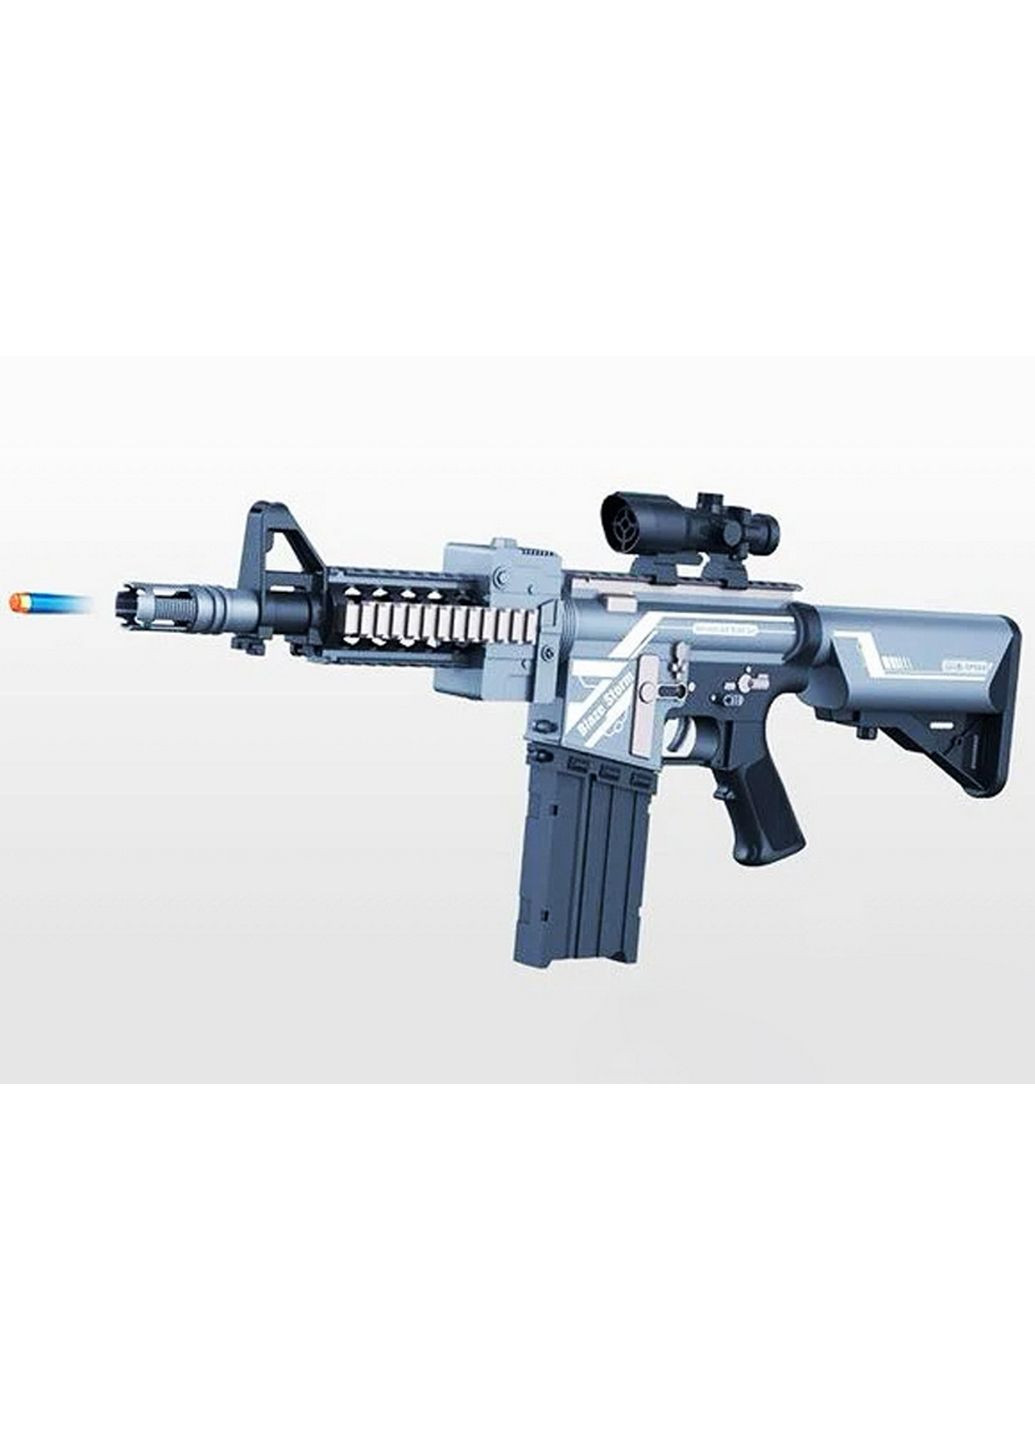 Штурмова гвинтівка-бластер M16 "Blaze Storm" м'які патрони, оптичний приціл, вібрація 72х24х6 см Zecong Toys (289464250)